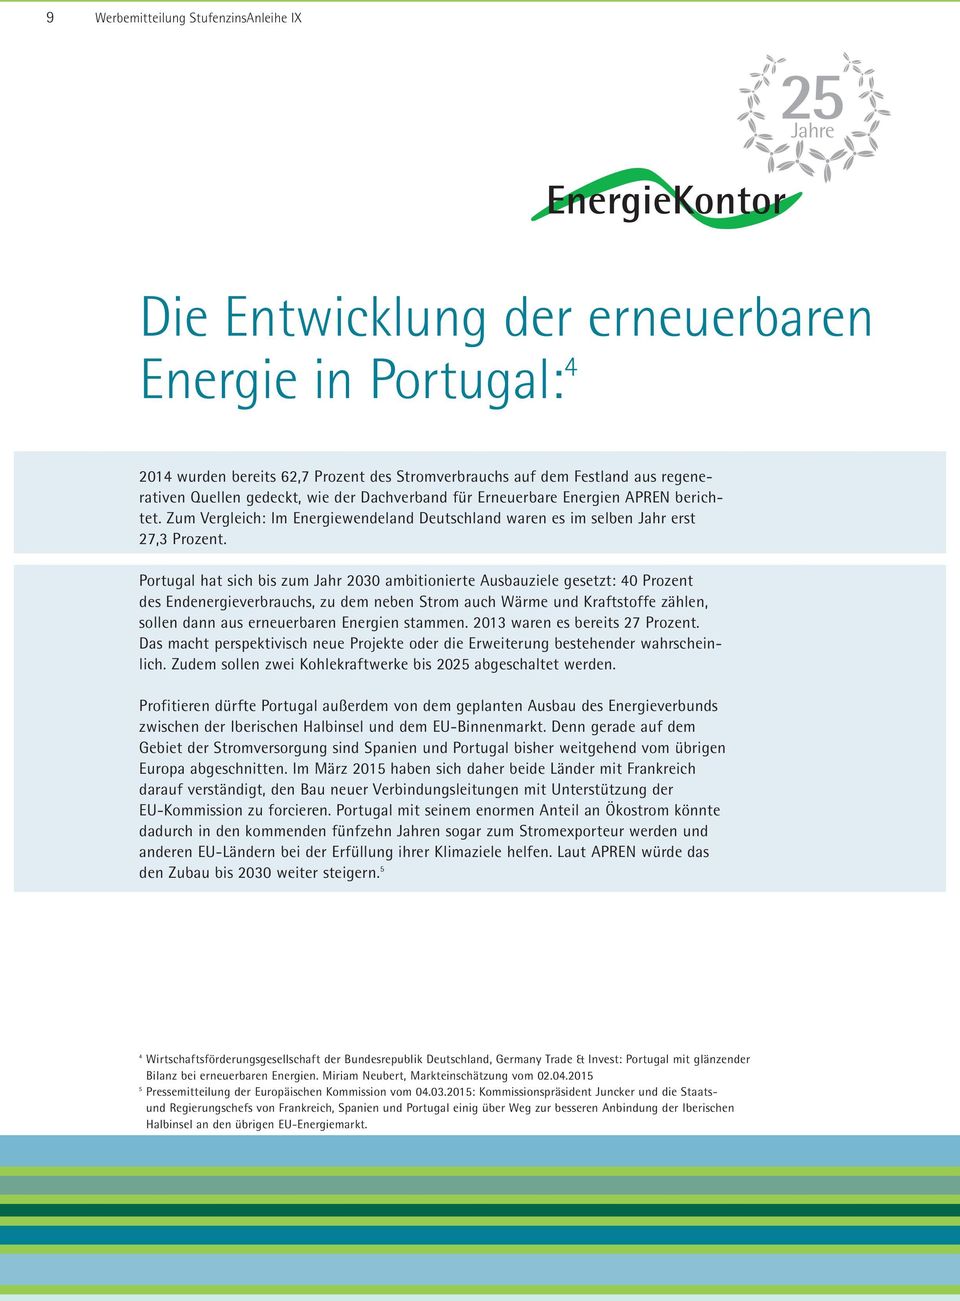 Portugal hat sich bis zum Jahr 2030 ambitionierte Ausbauziele gesetzt: 40 Prozent des Endenergieverbrauchs, zu dem neben Strom auch Wärme und Kraftstoffe zählen, sollen dann aus erneuerbaren Energien